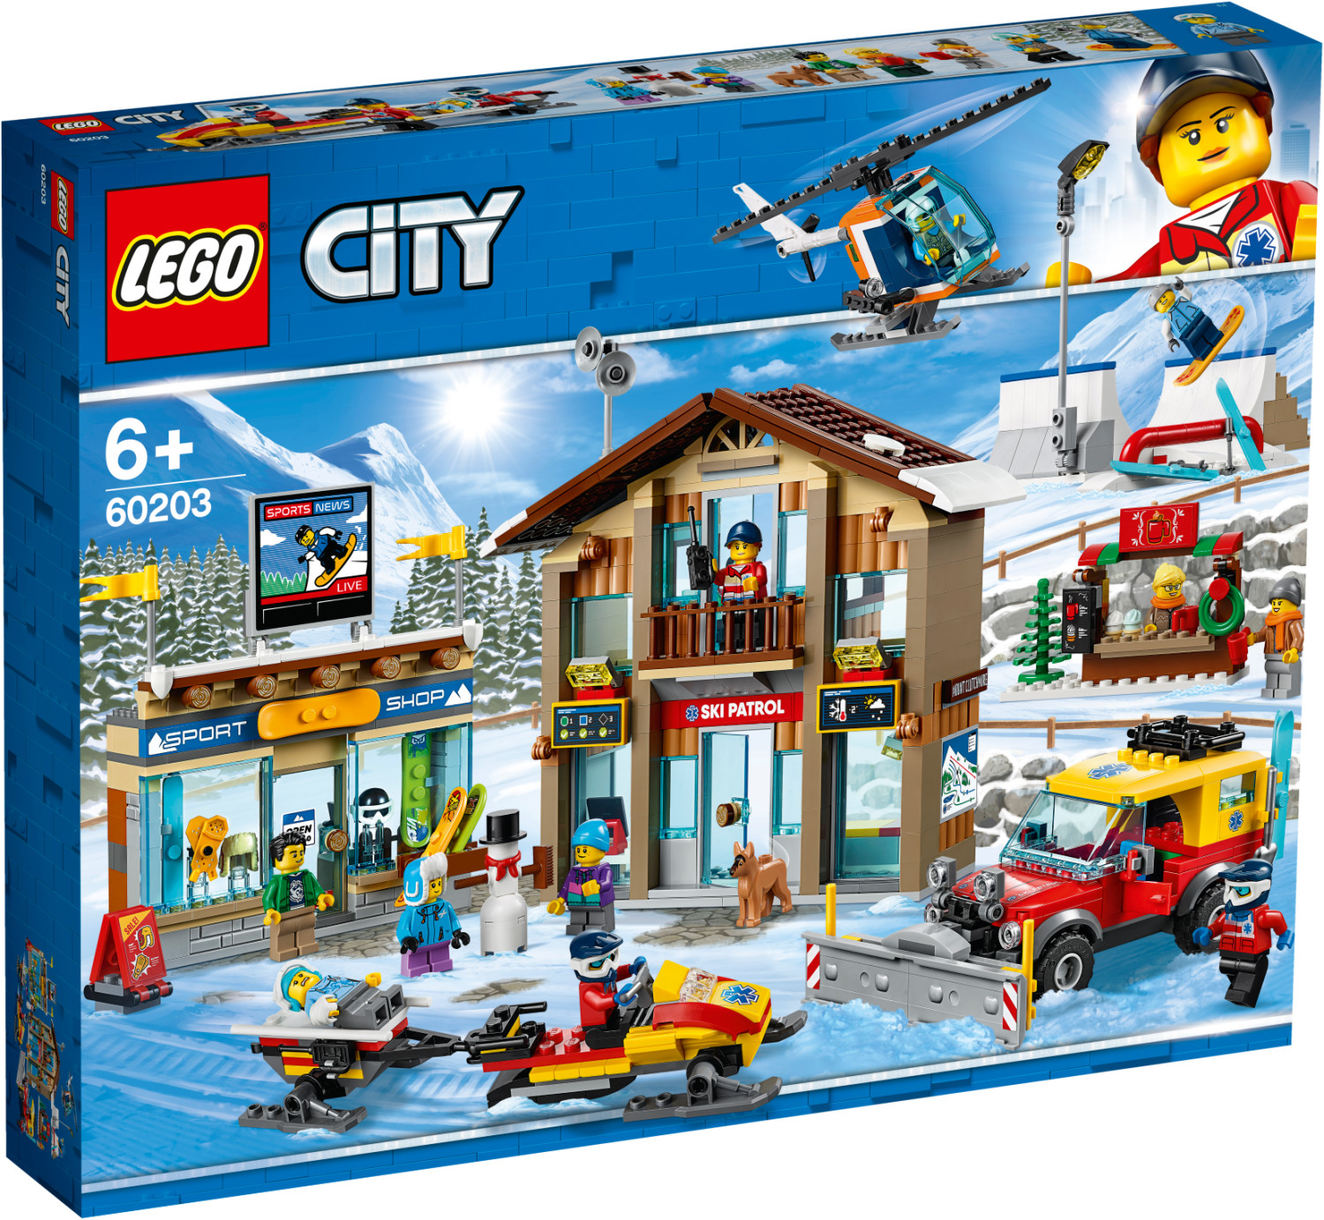 LEGO City - Ski Resort (60203)